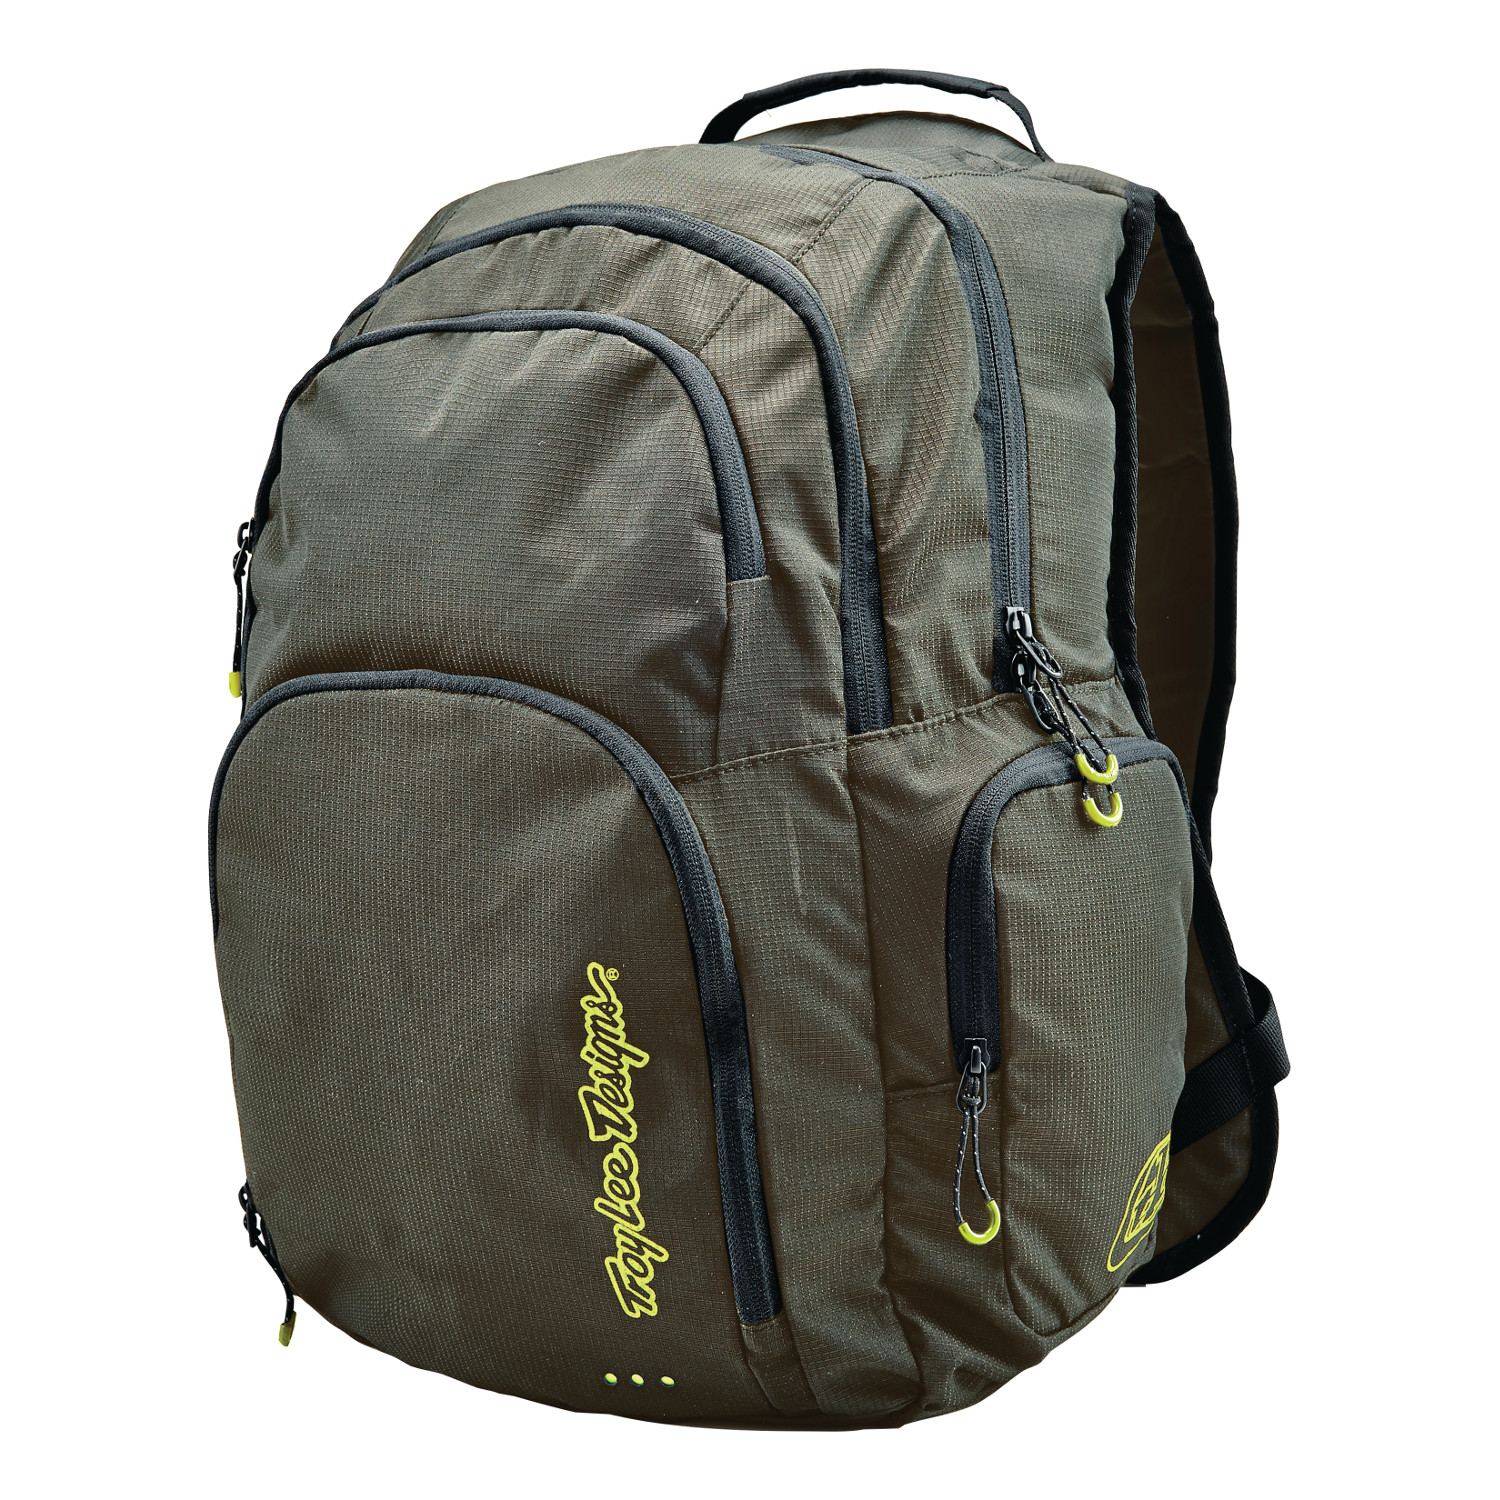 Troy Lee Designs Backpack Genesis Army Green